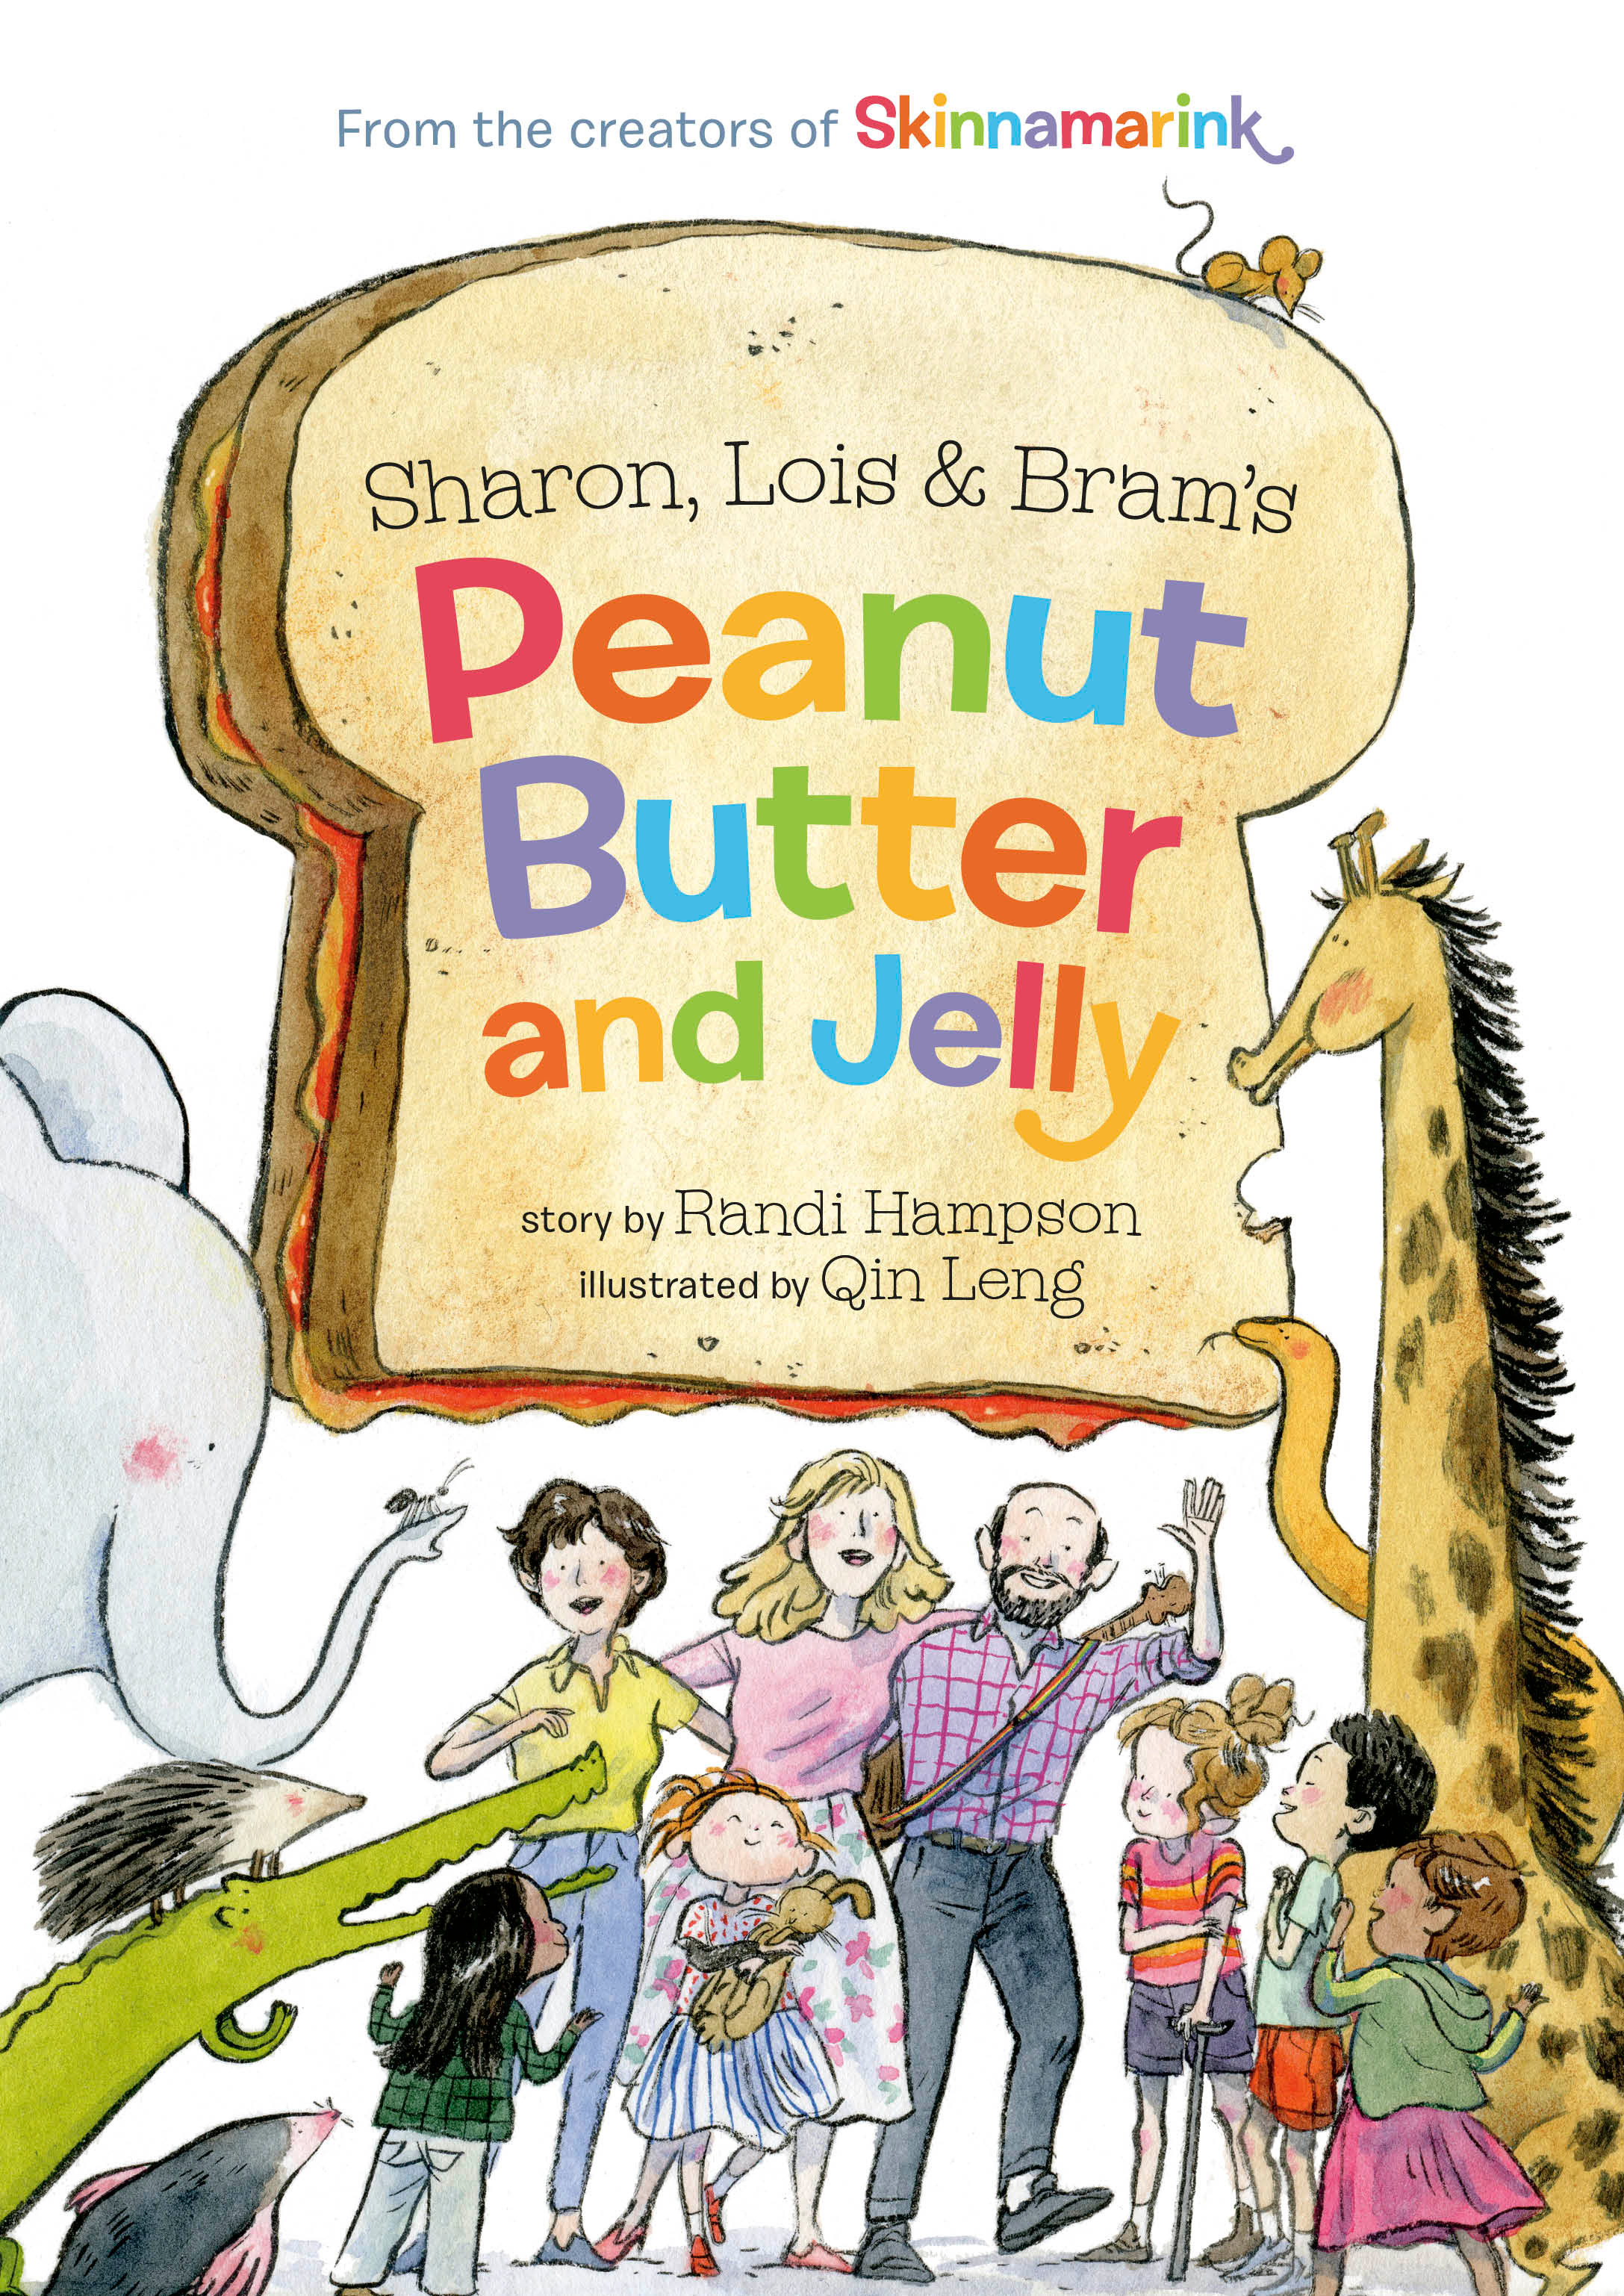 Sharon, Lois and Bram's Peanut Butter and Jelly | Hampson, Sharon (Auteur) | Lillienstein, Lois (Auteur) | Morrison, Bram (Auteur) | Hampson, Randi (Auteur) | Leng, Qin (Illustrateur)